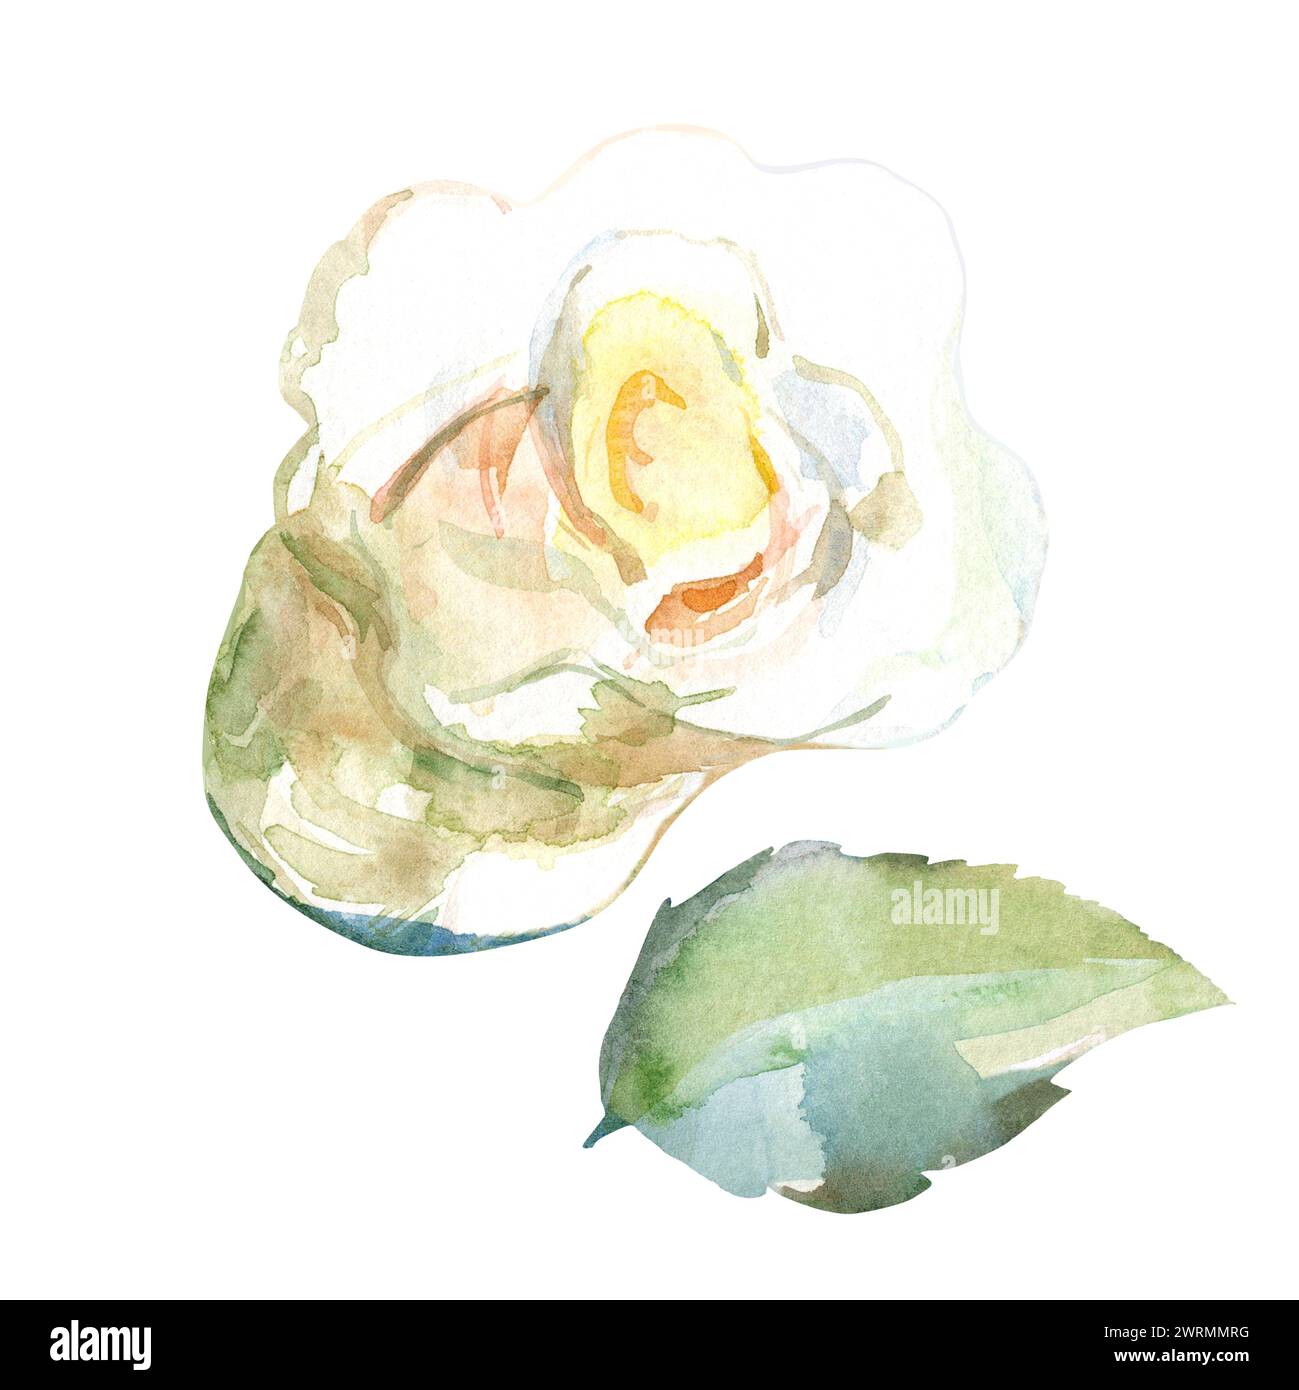 Ensemble d'illustration florale d'aquarelle de roses blanches avec des feuilles vertes dans les fleurs de jardin de collection. Isolé sur fond blanc. Motif floral de mariage Banque D'Images